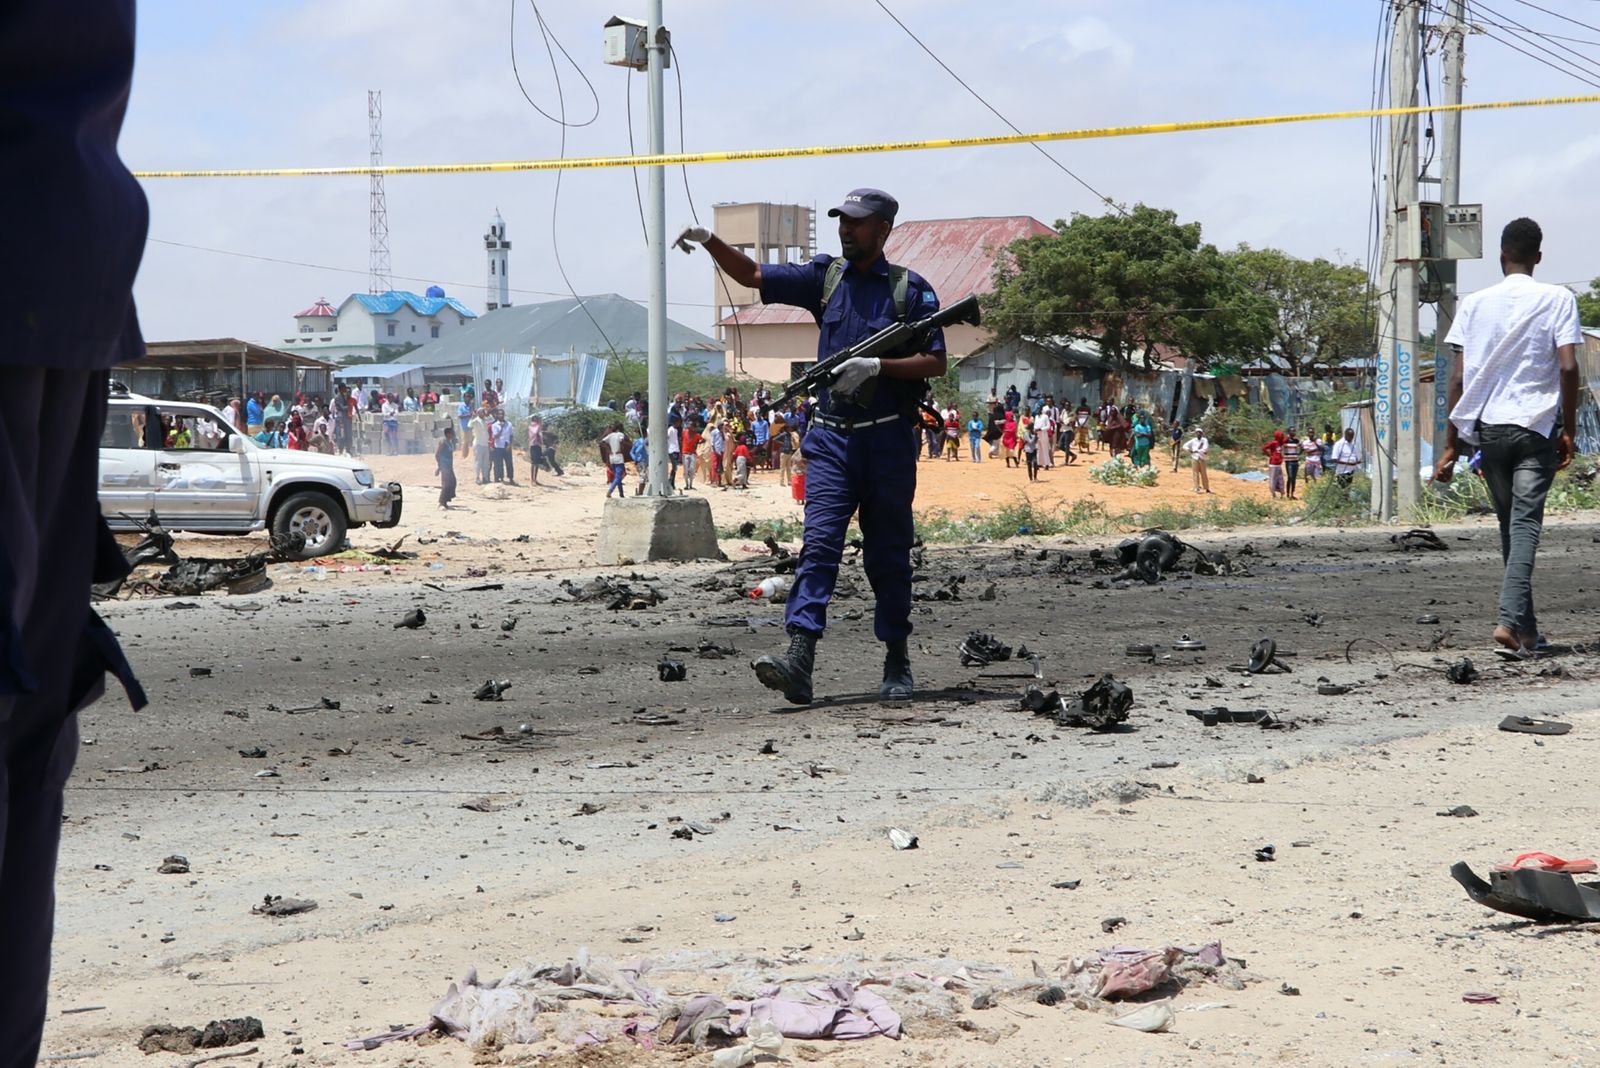 جندي صومالي في موقع شهد هجوماً انتحارياً تبنته حركة الشباب في مقديشو - 1 أكتوبر 2018 - AFP